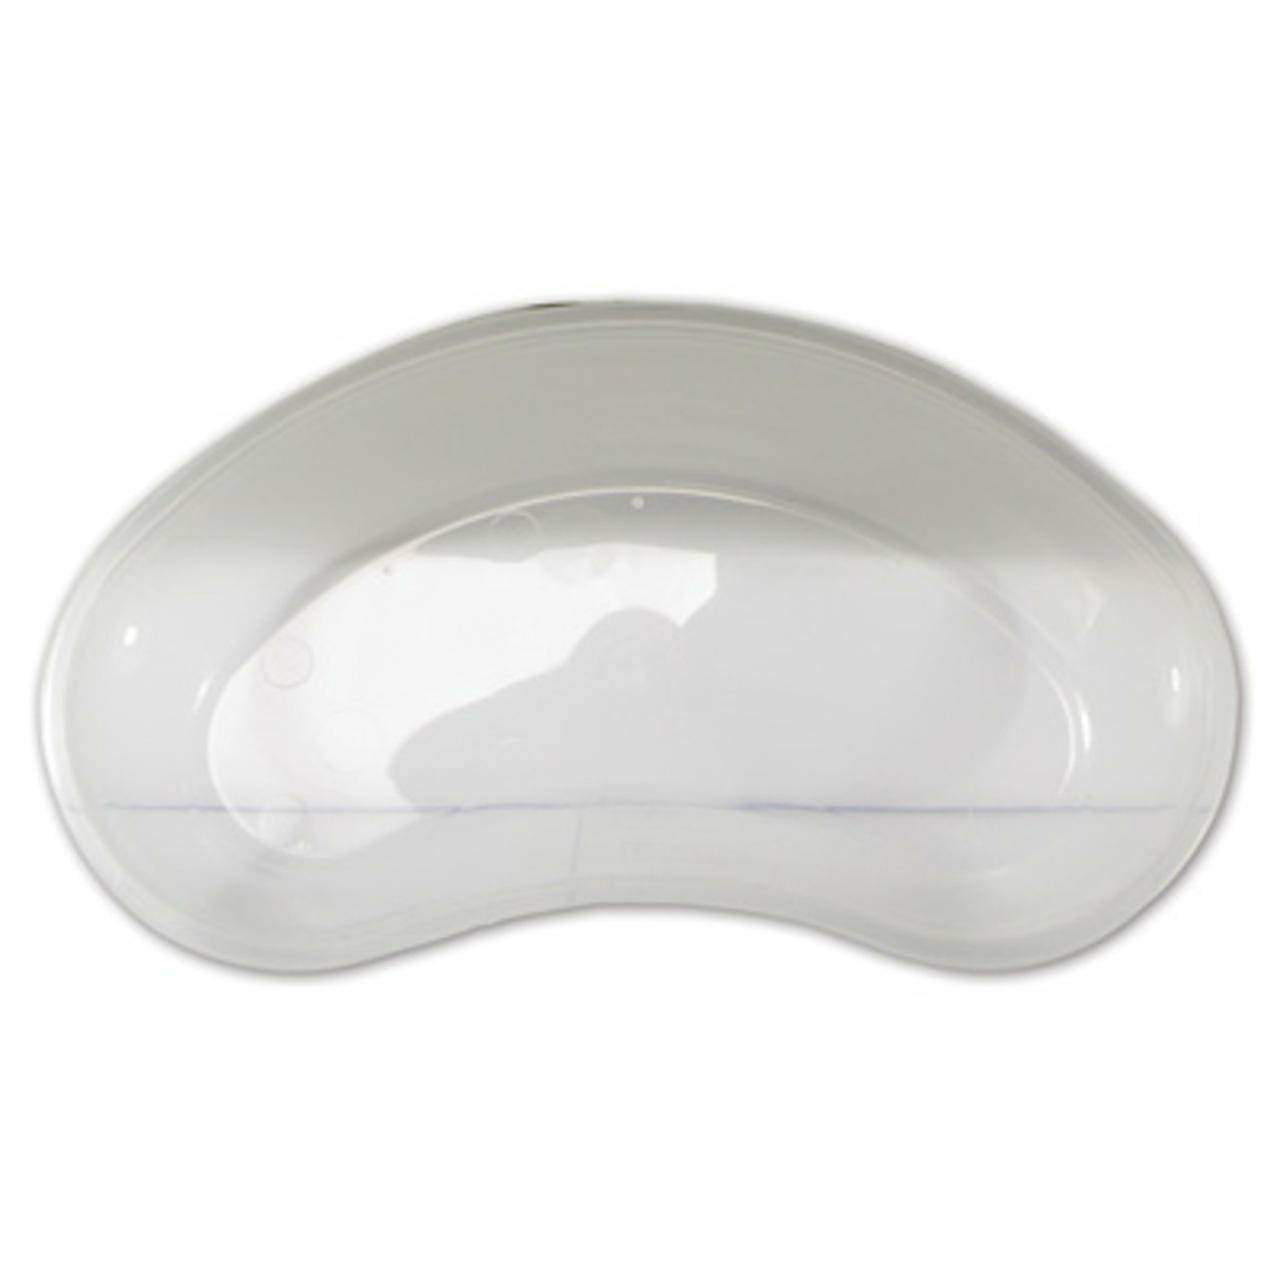 Kidney Dish Clear Plastic 500ml - UKMEDI